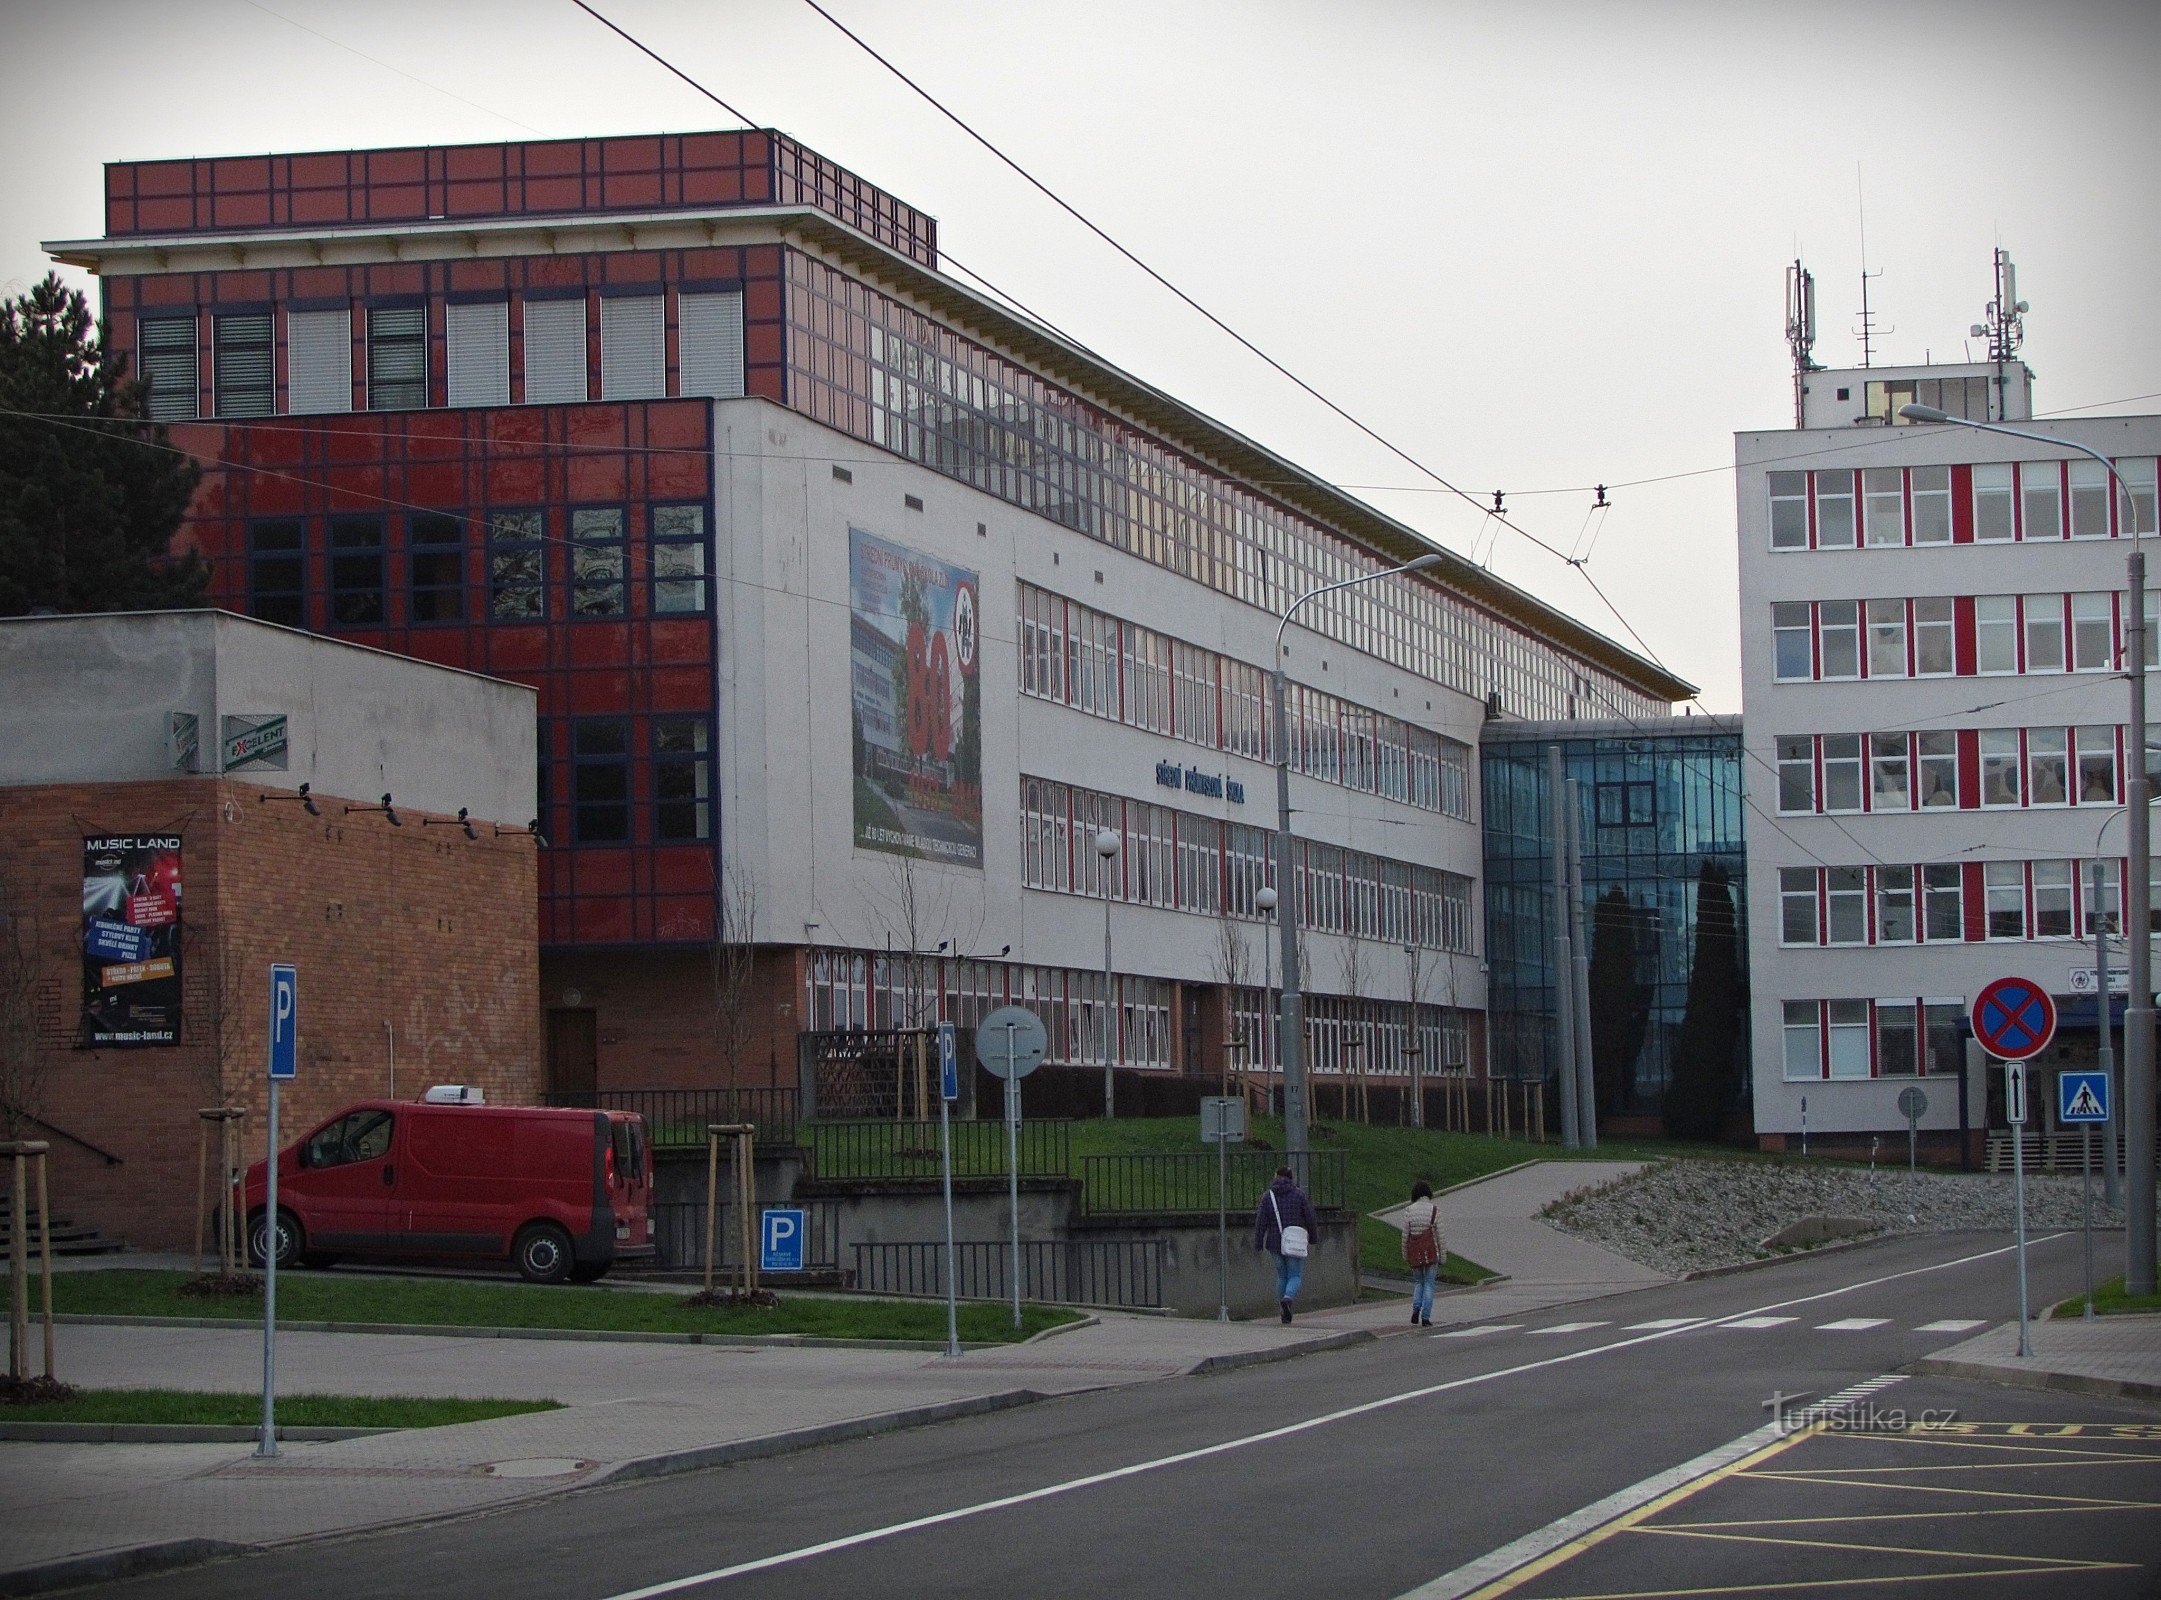 兹林 - 第二工业学校的建筑物